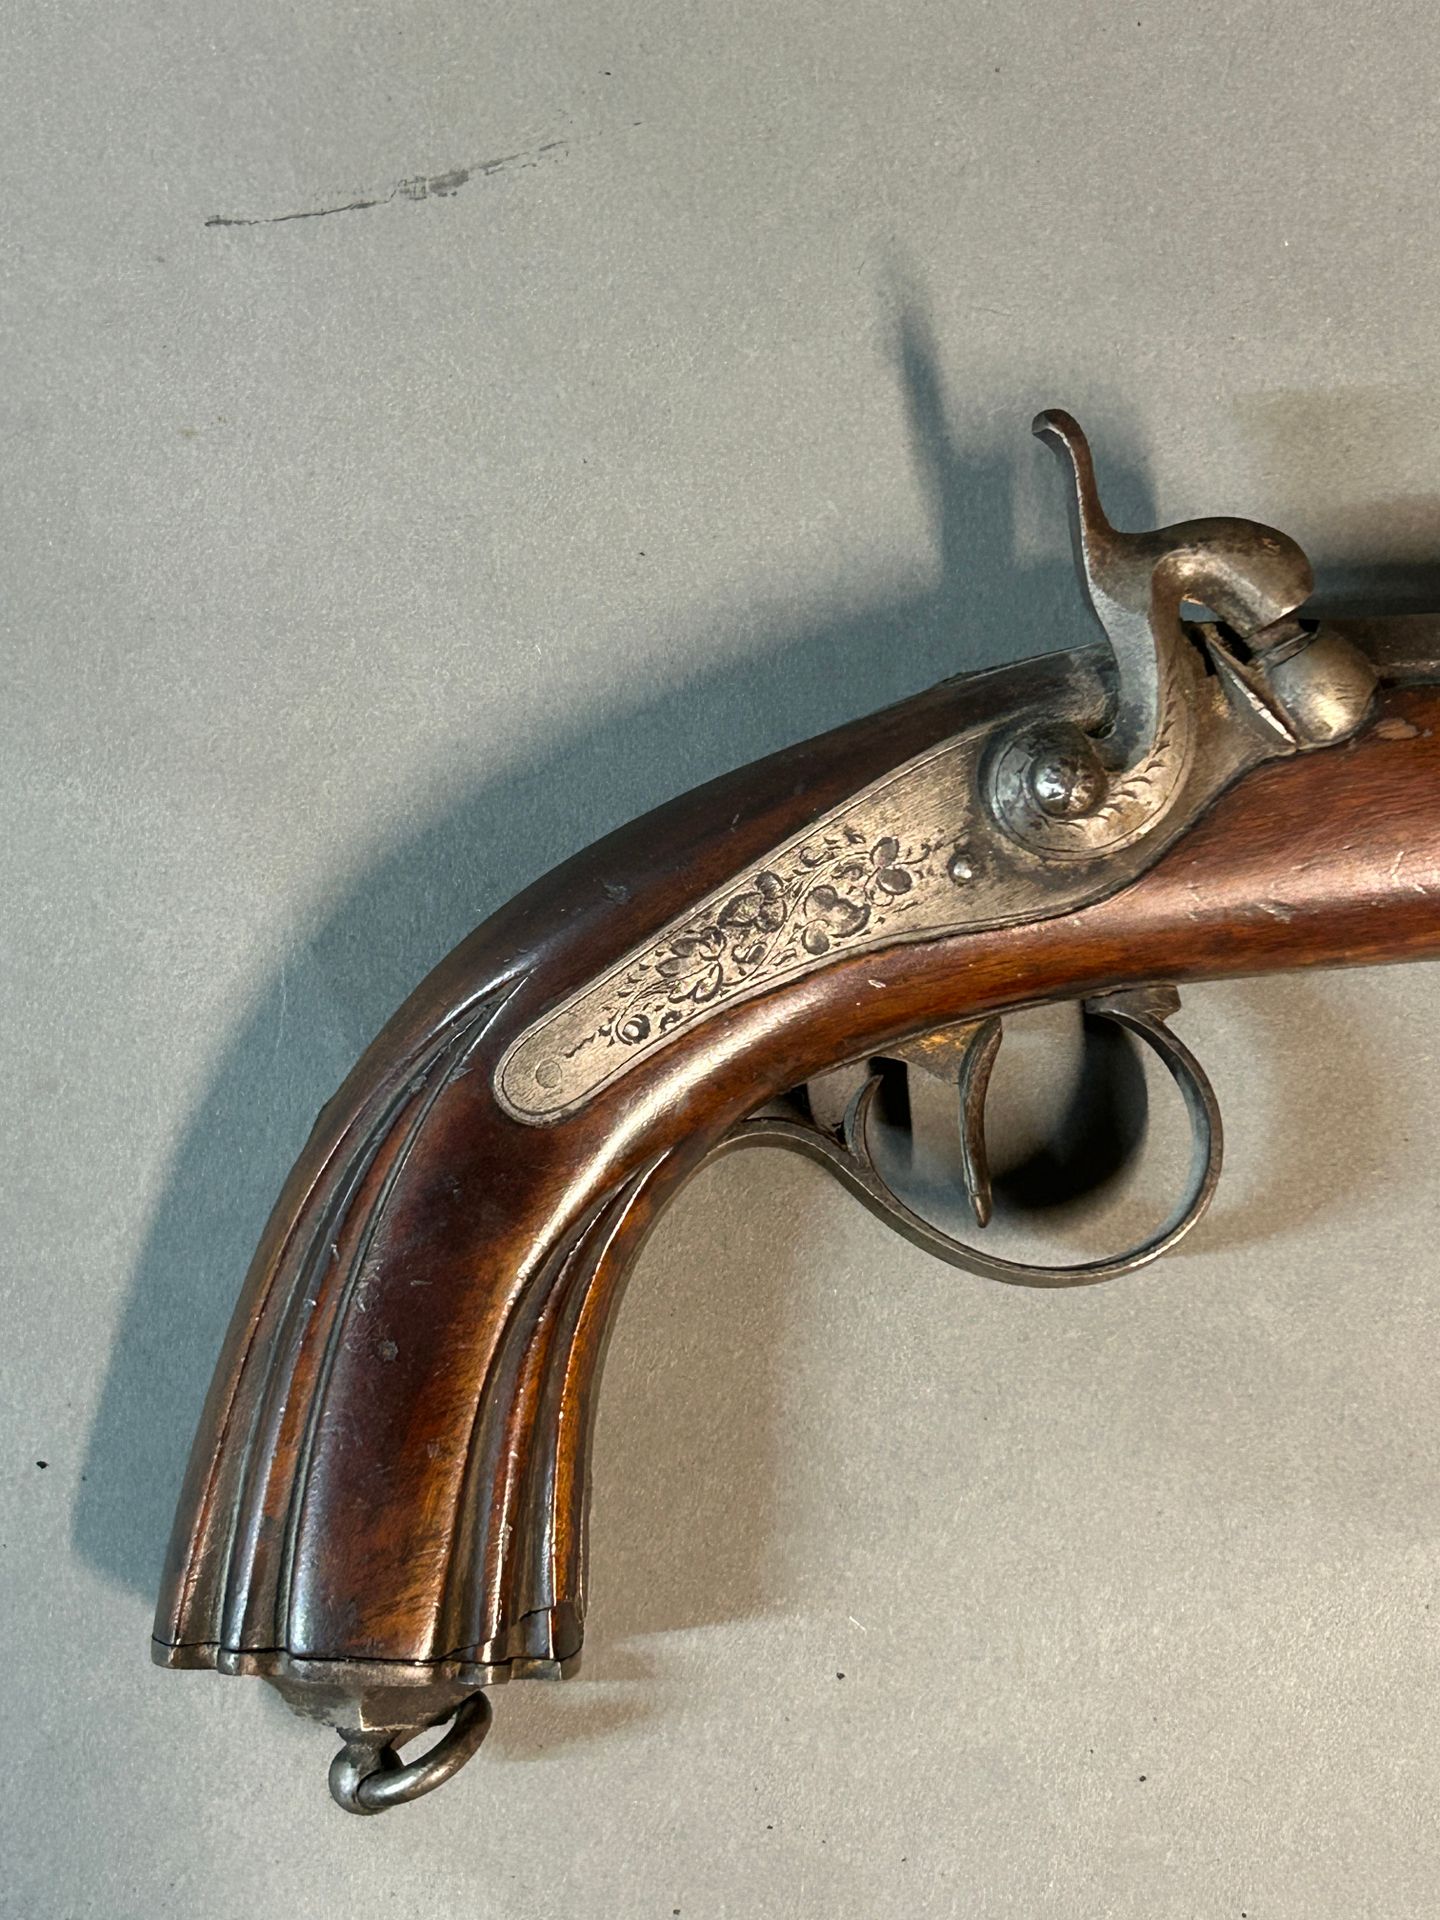 Null 半鞍马式手枪。

敲击式锁，八角形大马士革钢枪管。

胡桃木股票。

总长度：32厘米

可能是1840年左右在列日制造的。